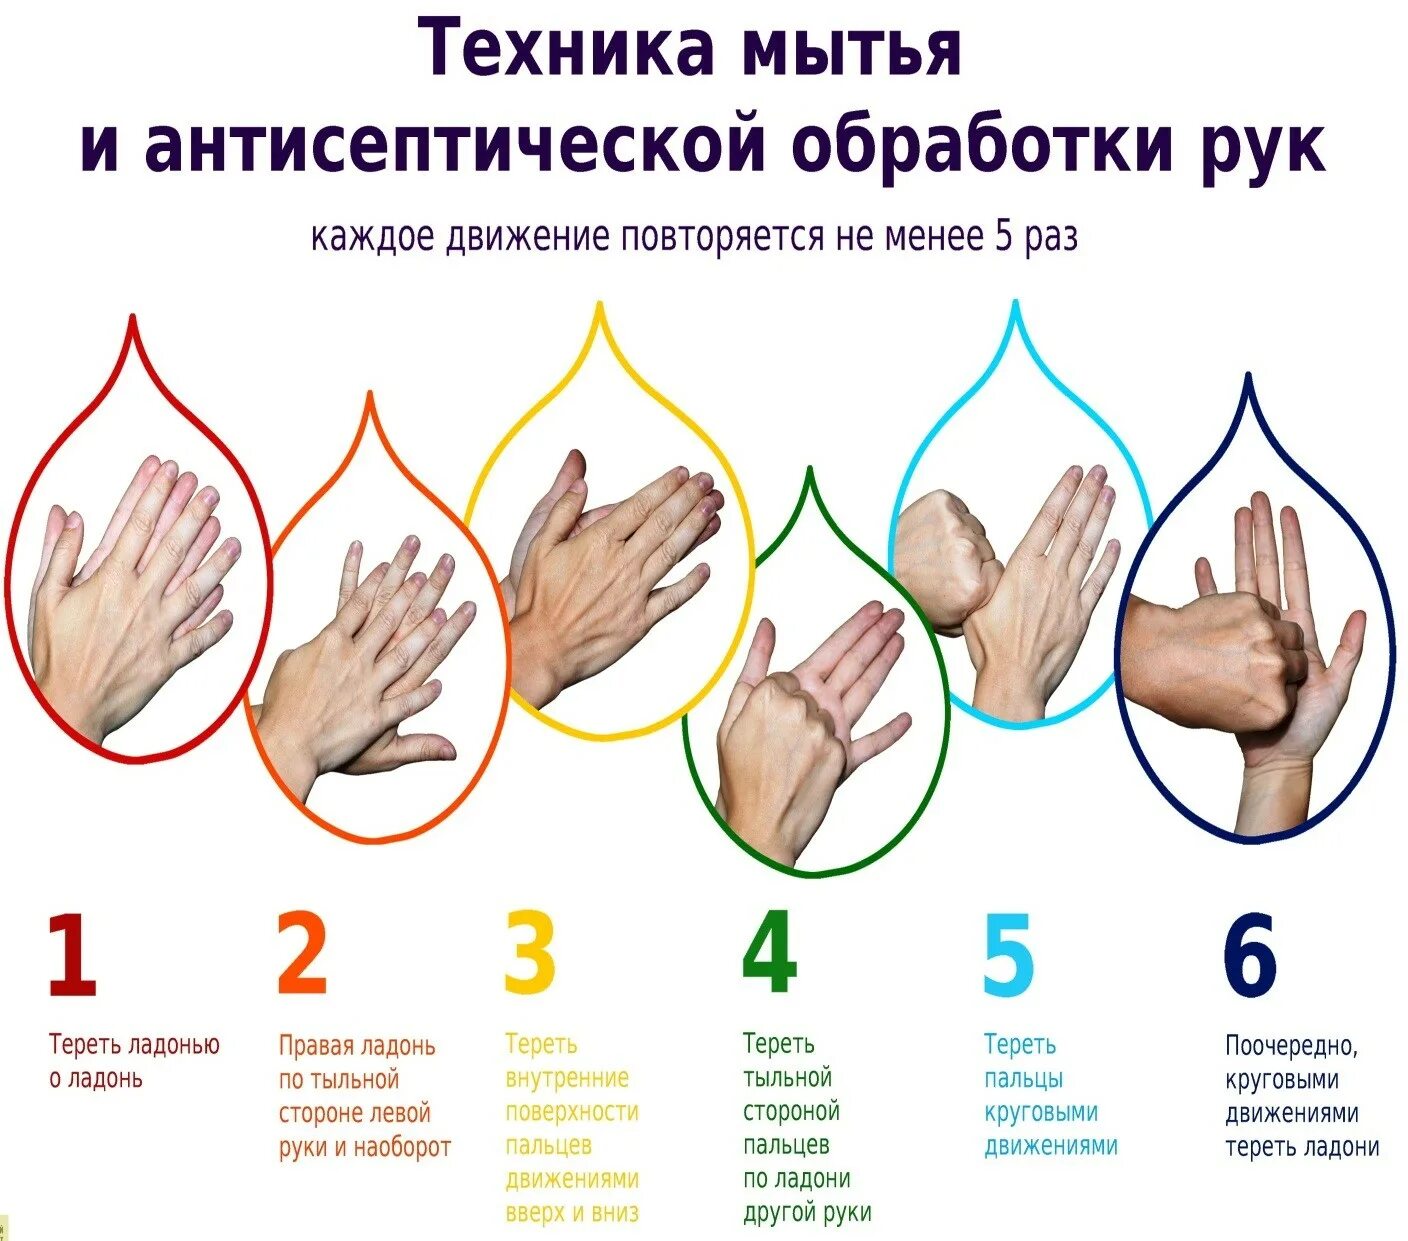 Цель мытья рук. Обработка рук гигиеническим способом. Гигиеническая обработка рук антисептиком медперсонала. Гигиеническая обработка рук кожным антисептиком проводится. Гигиенический метод мытья рук.